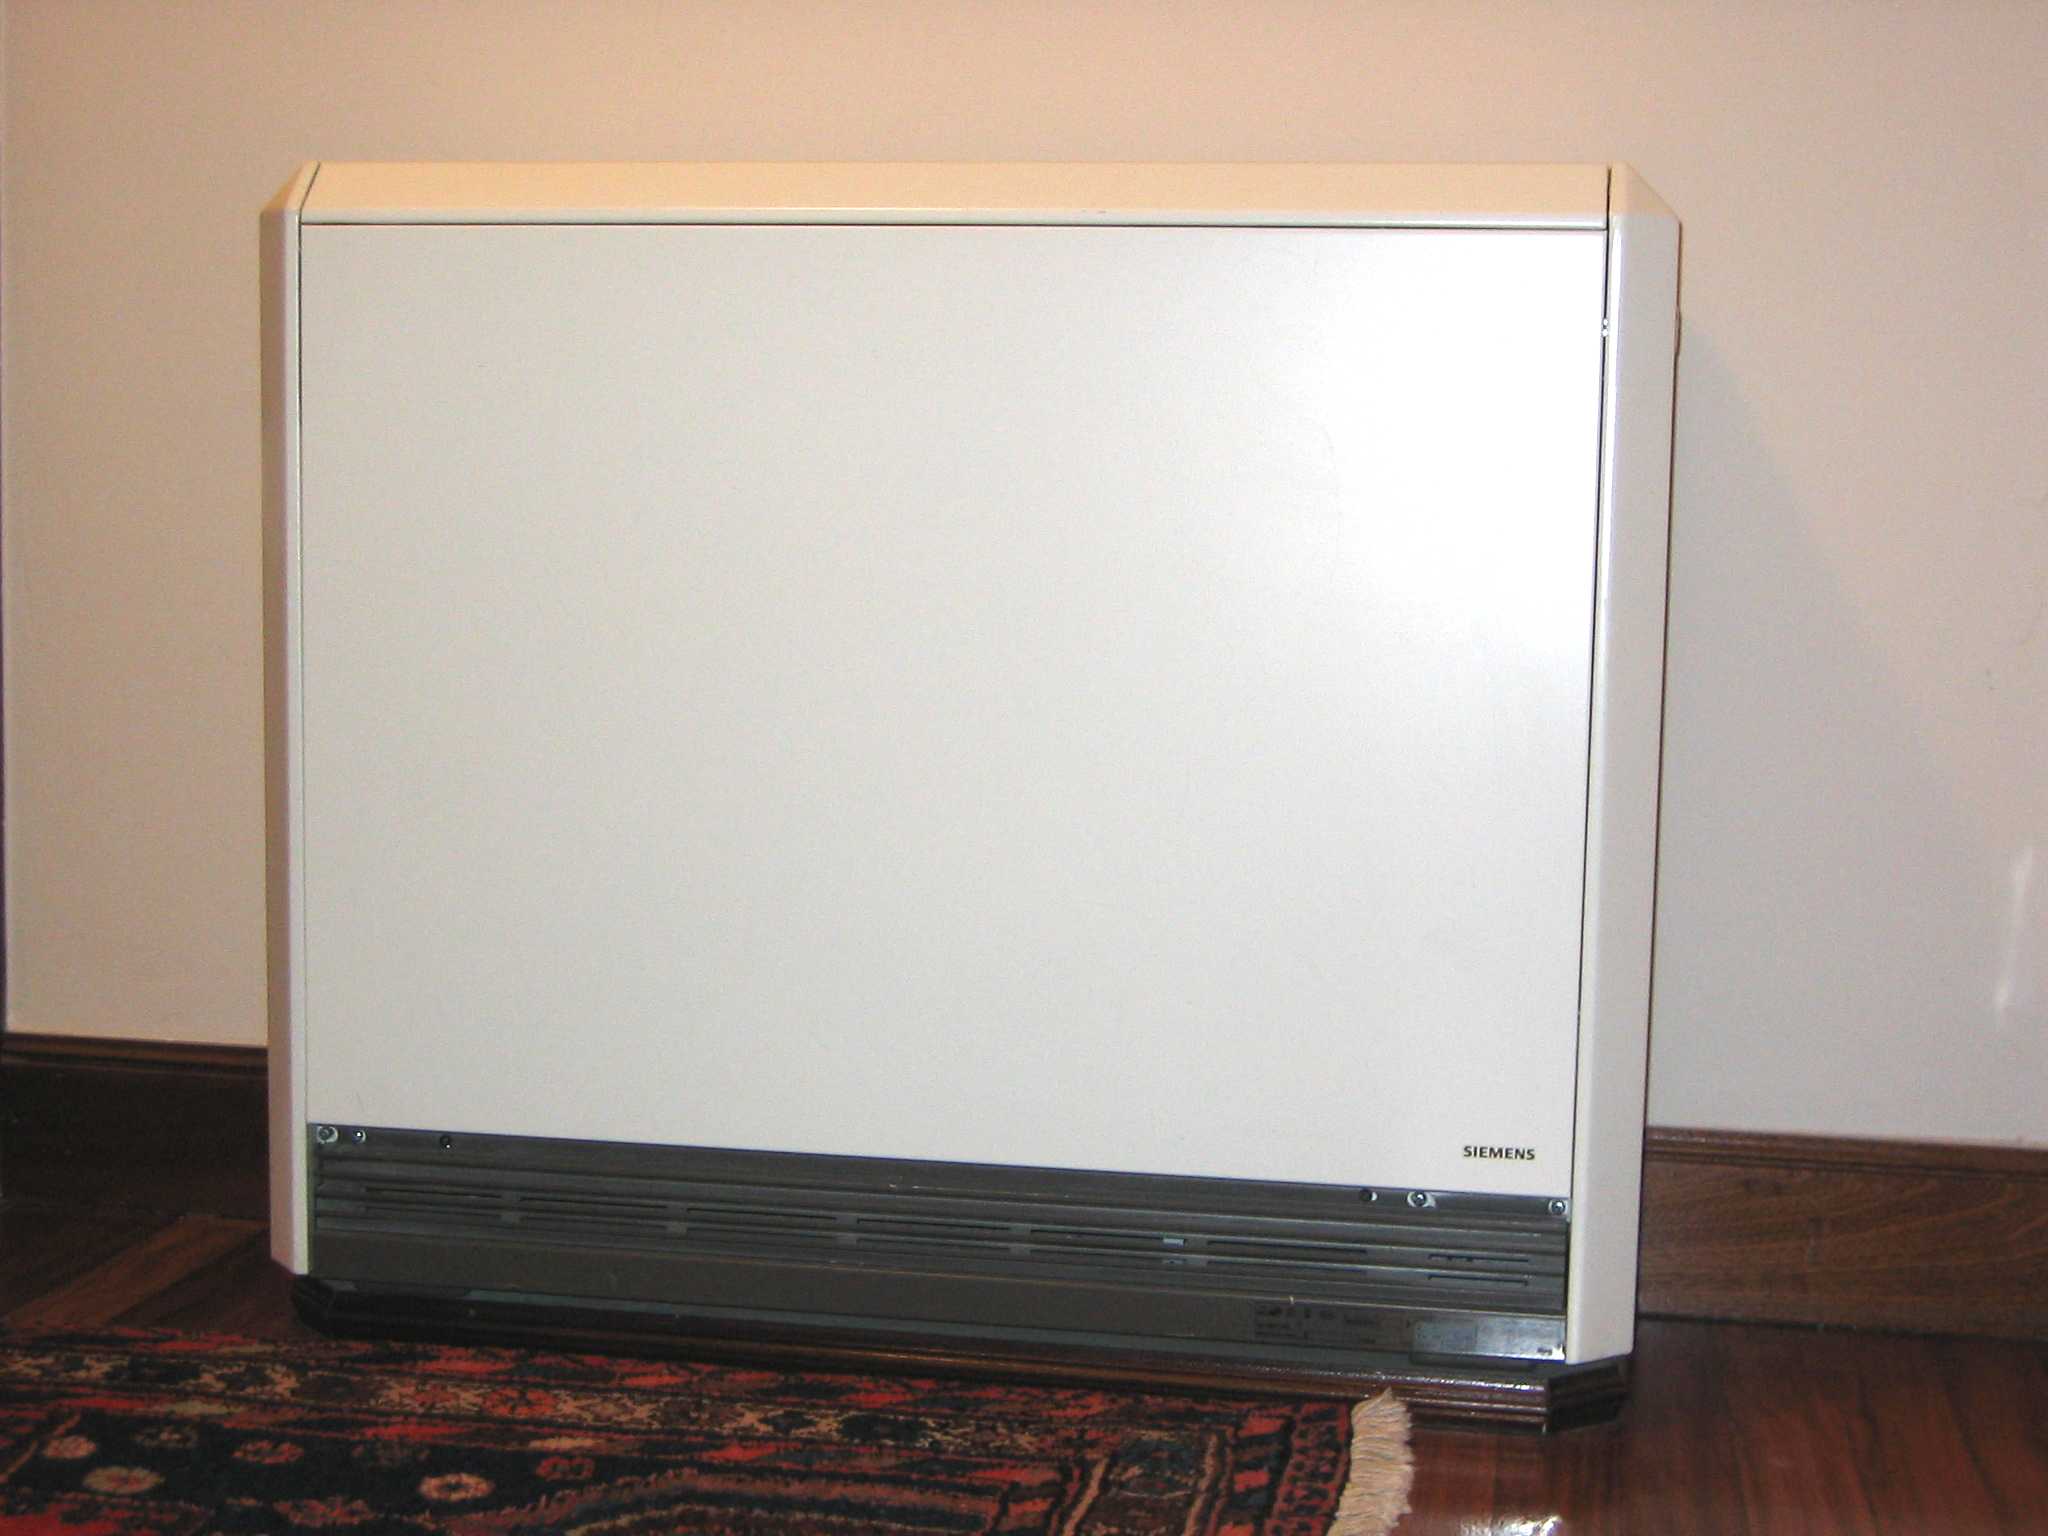 tipos de acumuladores de calor: dinámicos y estáticos